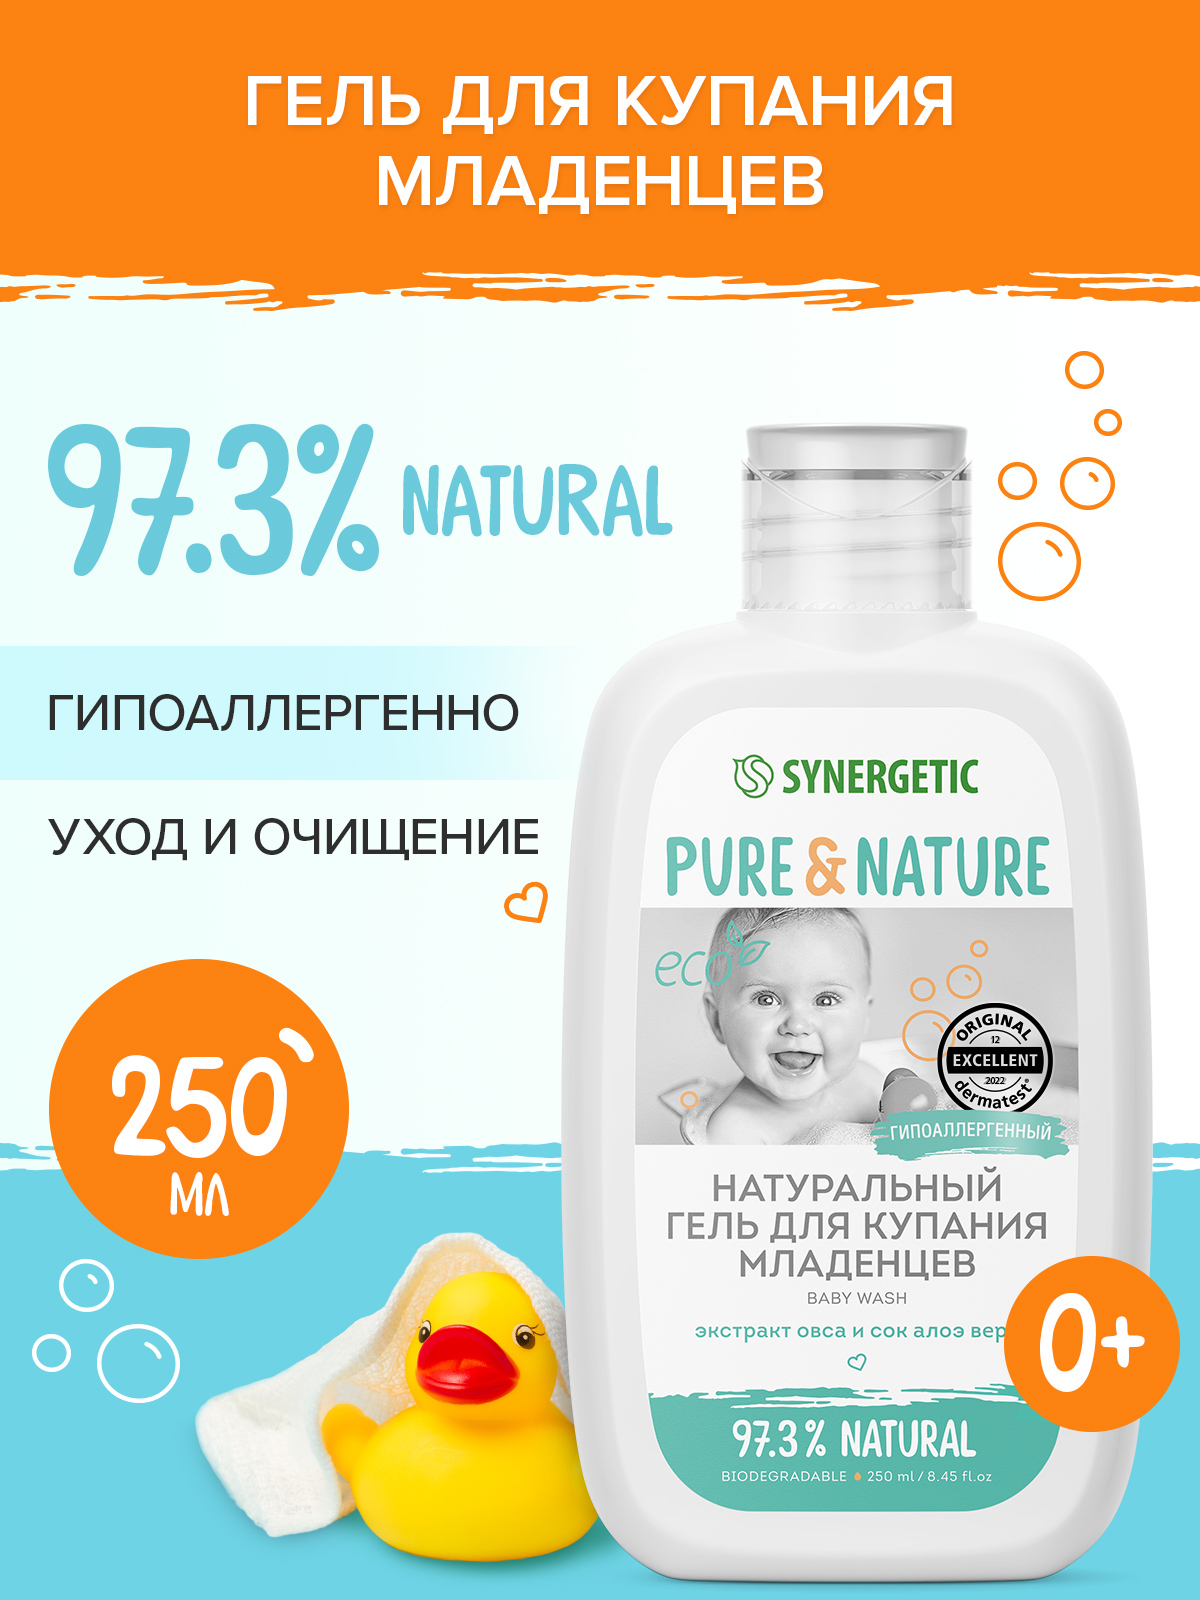 Натуральный гипоаллергенный гель для купания младенцев 0+ SYNERGETIC, 250мл synergetic набор гель стирка 1 л кондиционер райский сад 1 л